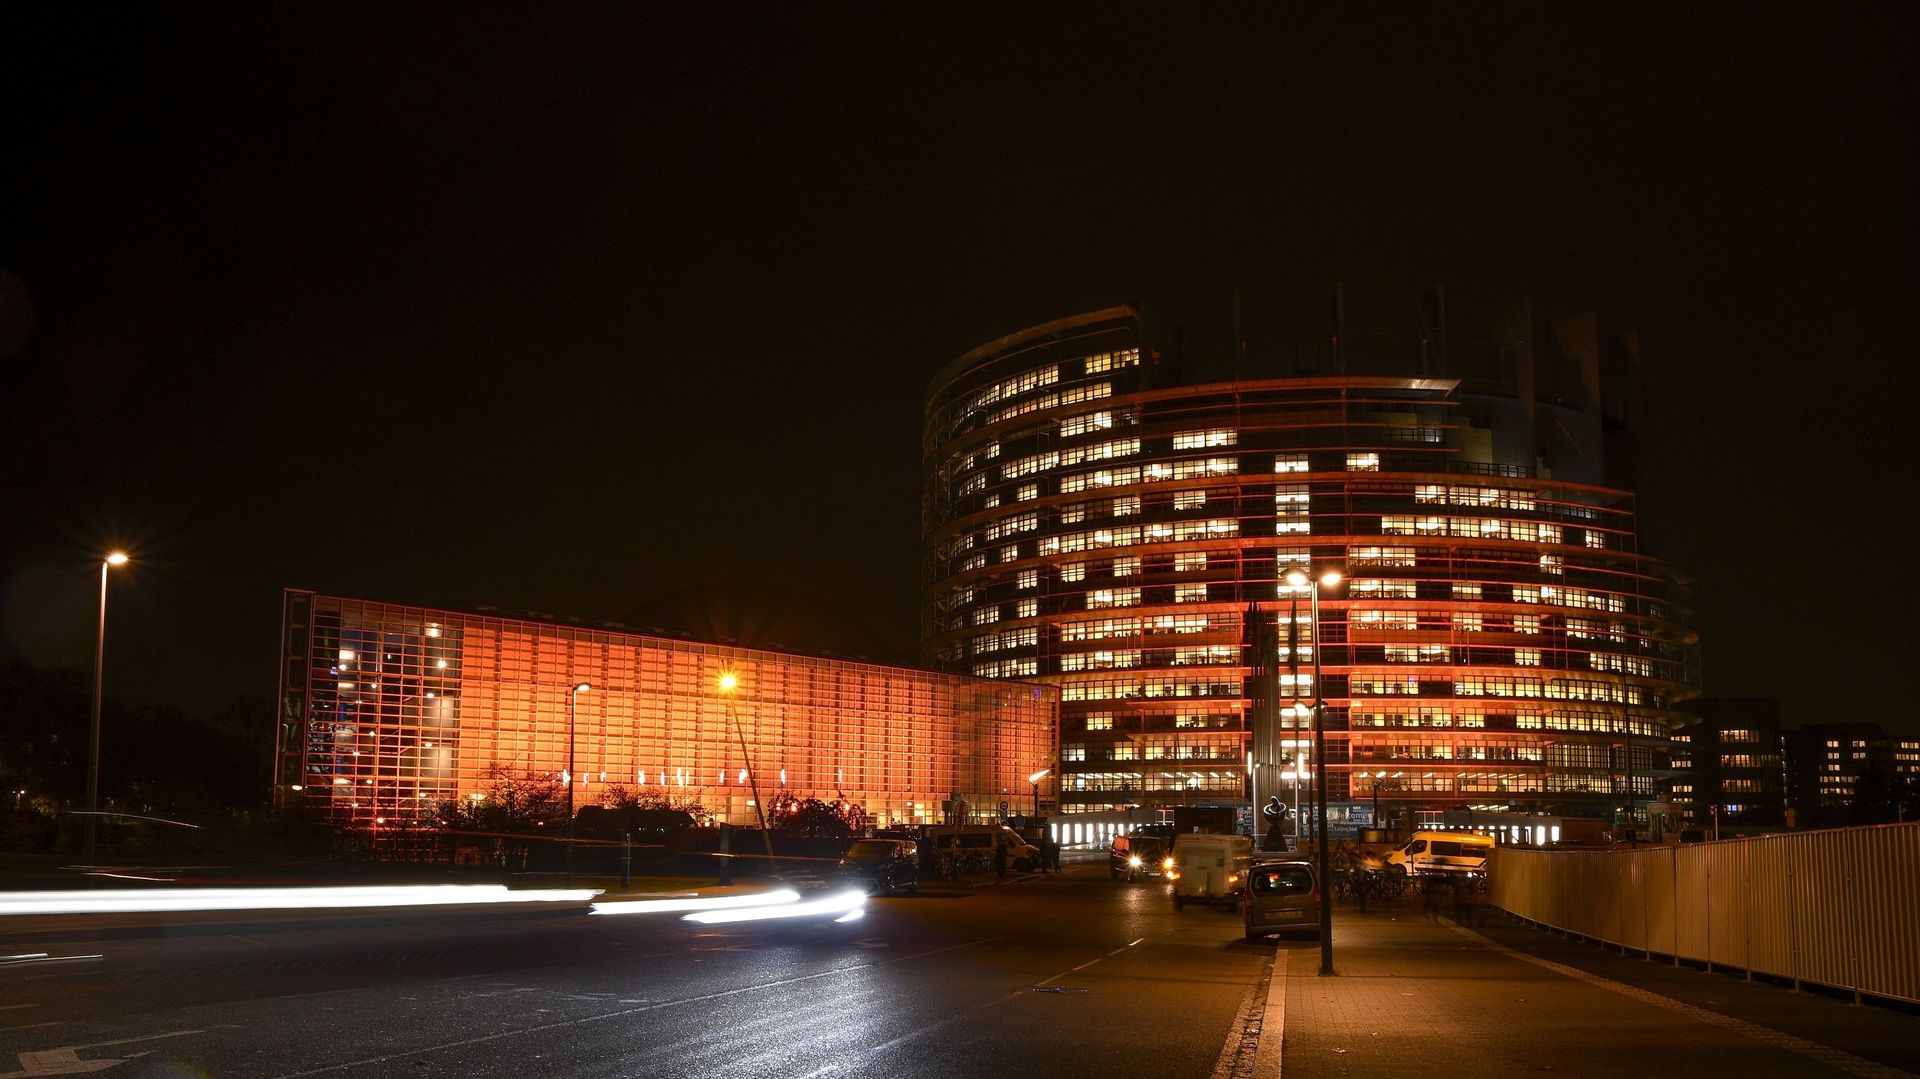 Illumination des bâtiments du siège du Parlement européen de Strasbourg, en novembre 2019, en hommage à la campagne "Orange your world" des Nations unies pour mettre fin à la violence contre les femmes et les filles.